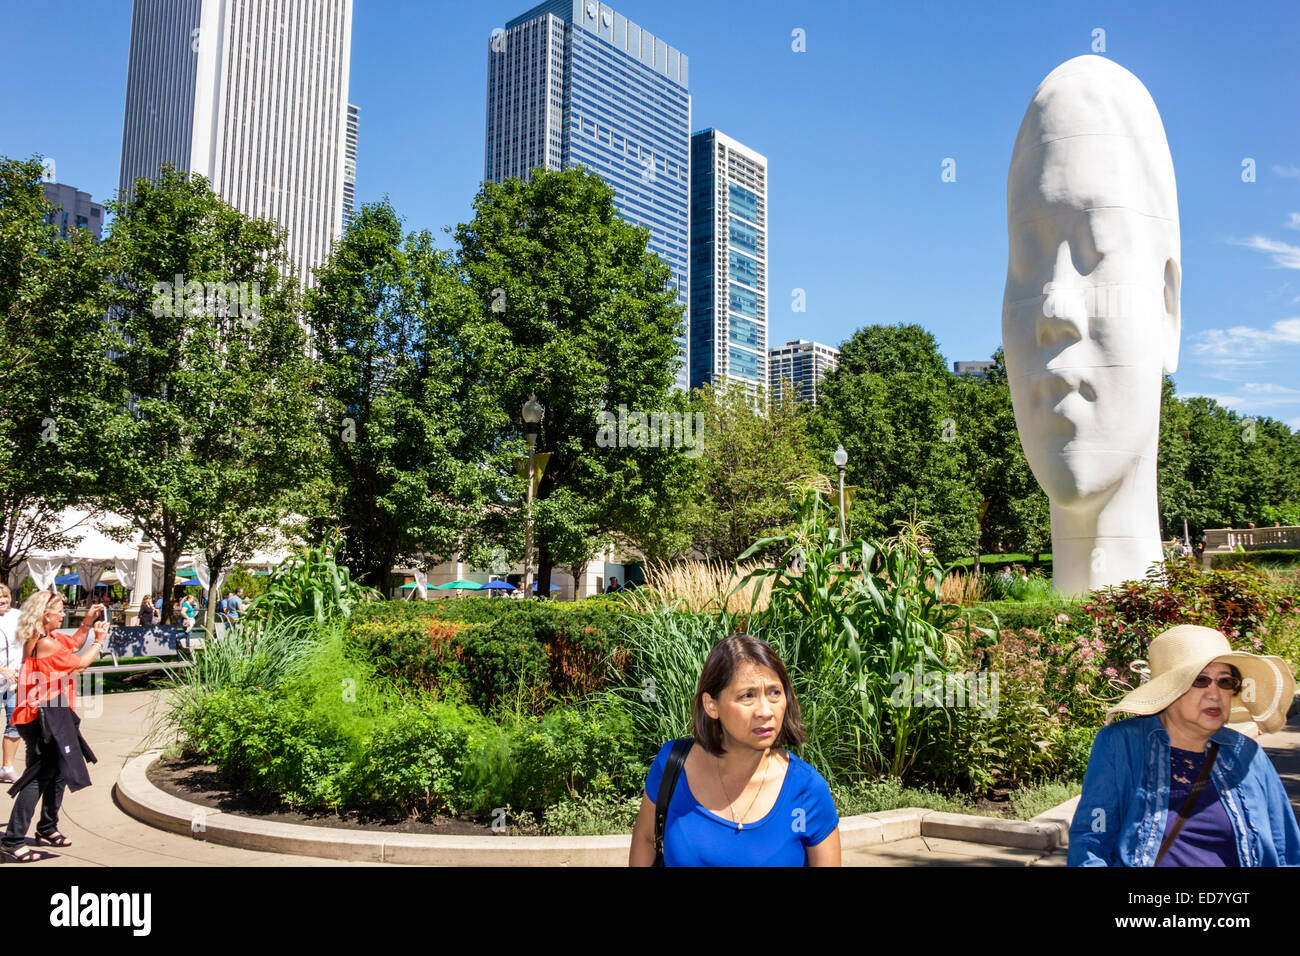 Chicago Illinois,Loop,Millennium Park,Jaume Plensa artista installazione testa gigante, scultura,Asian asiatici etnia immigrati minoranza, annuncio adulto Foto Stock